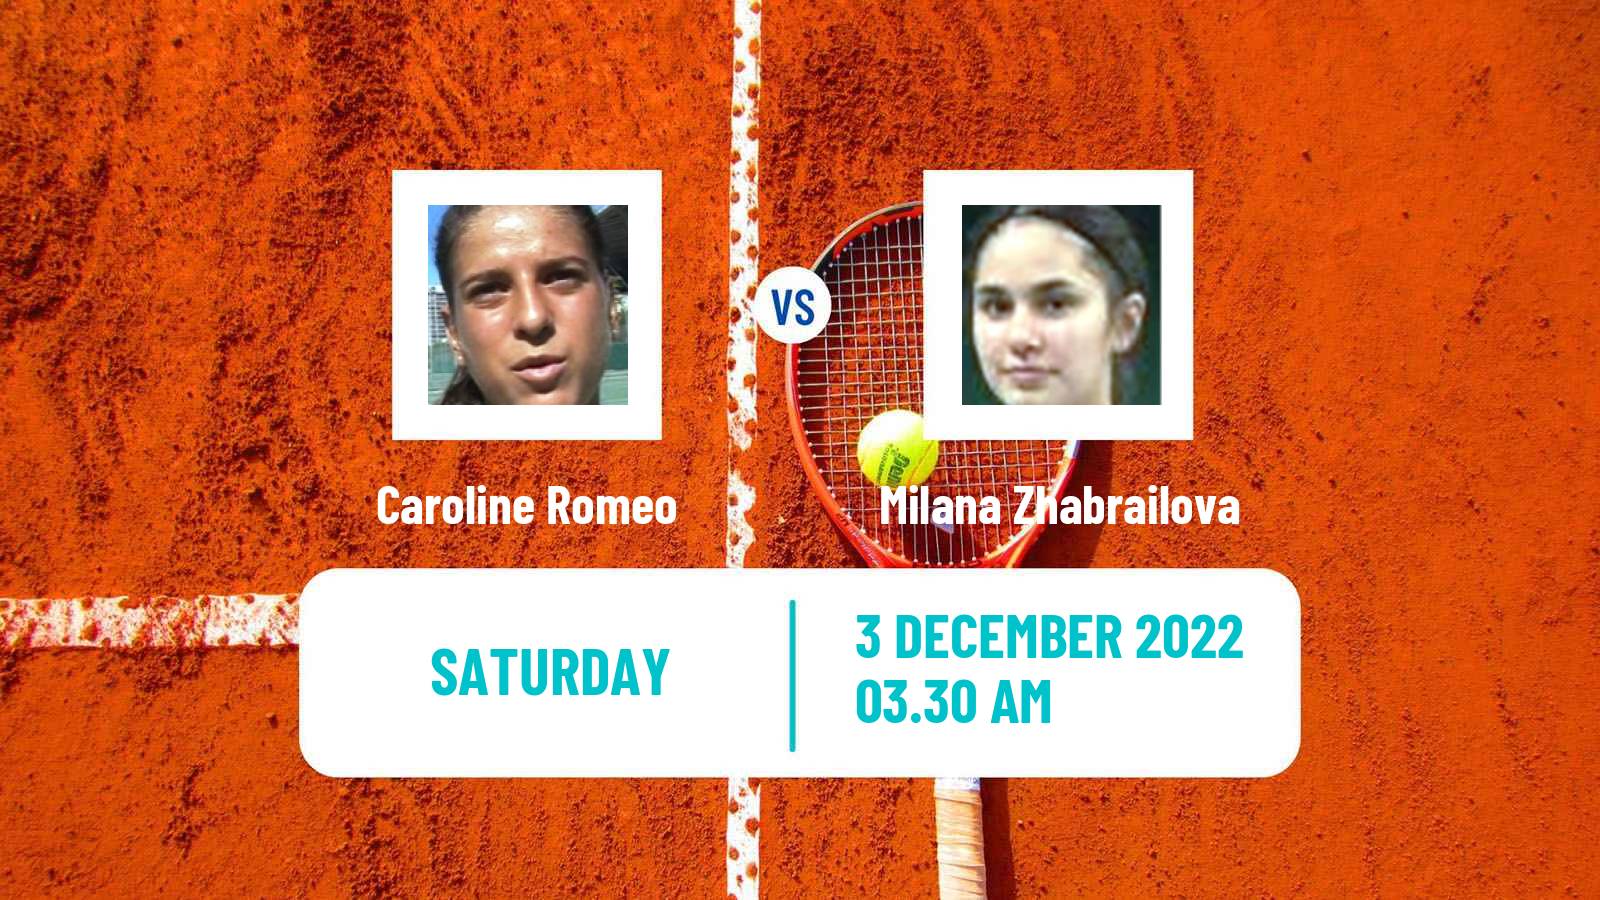 Tennis ITF Tournaments Caroline Romeo - Milana Zhabrailova